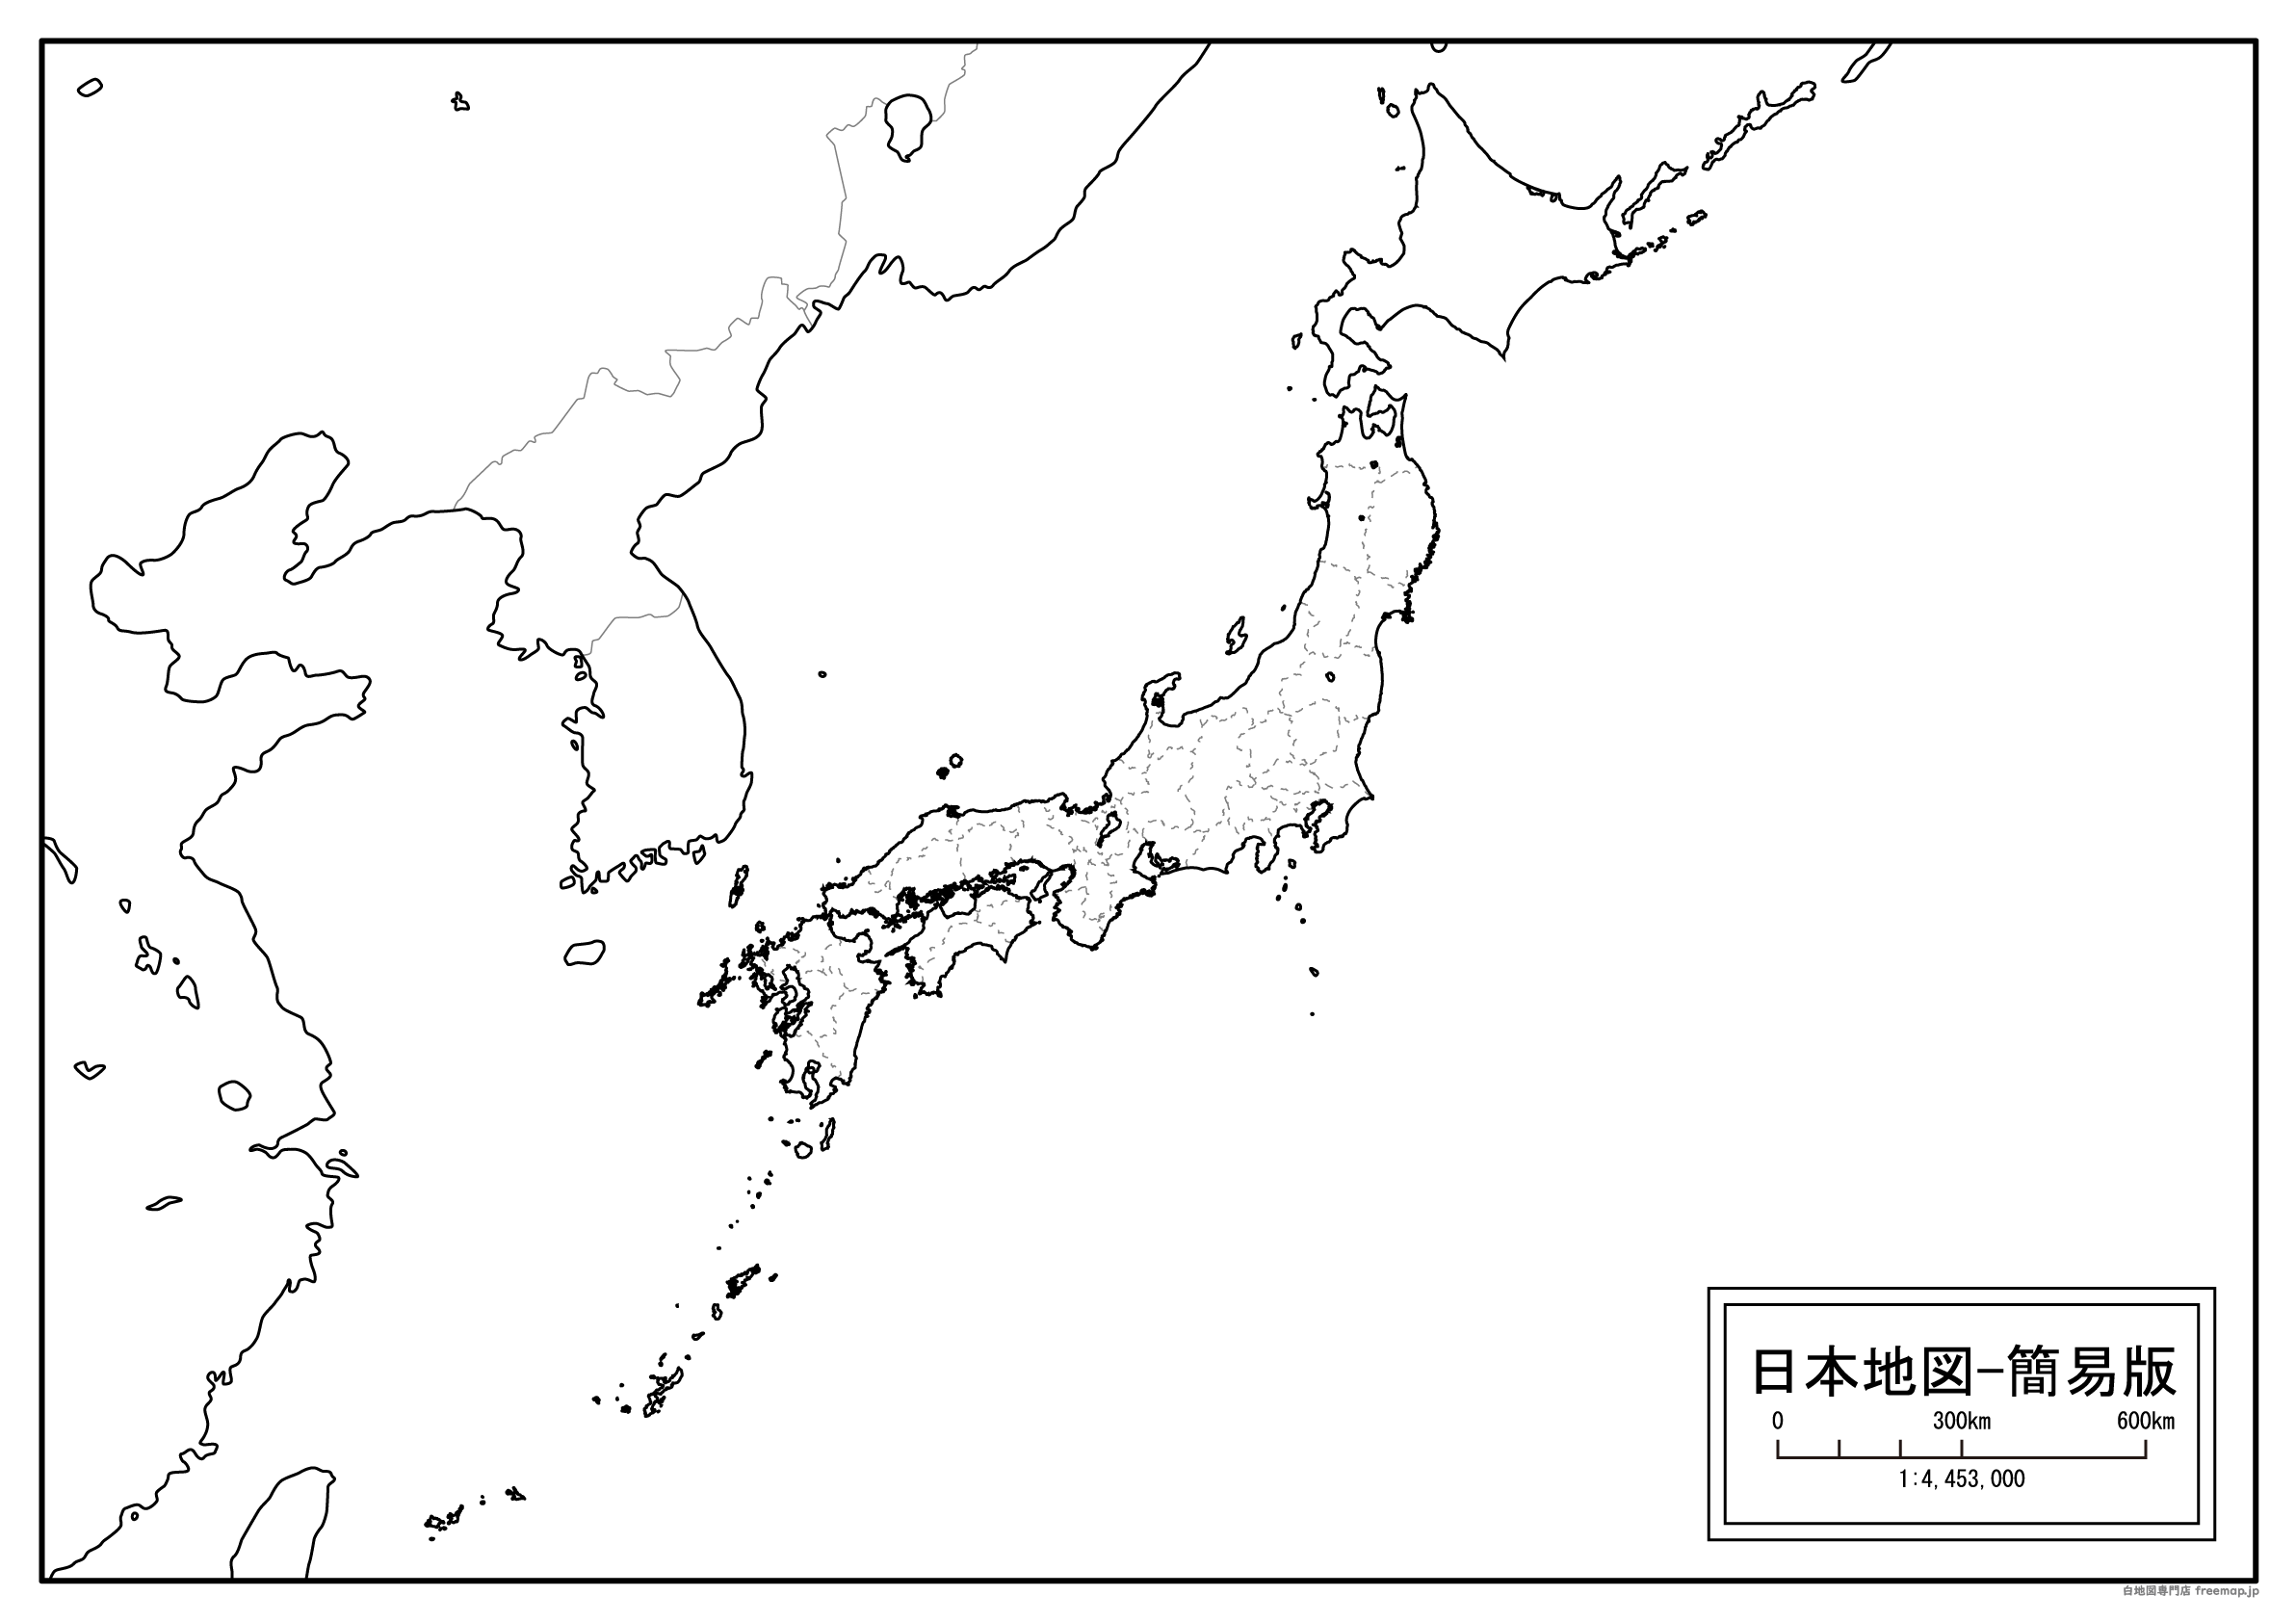 日本地図-簡易版のサムネイル